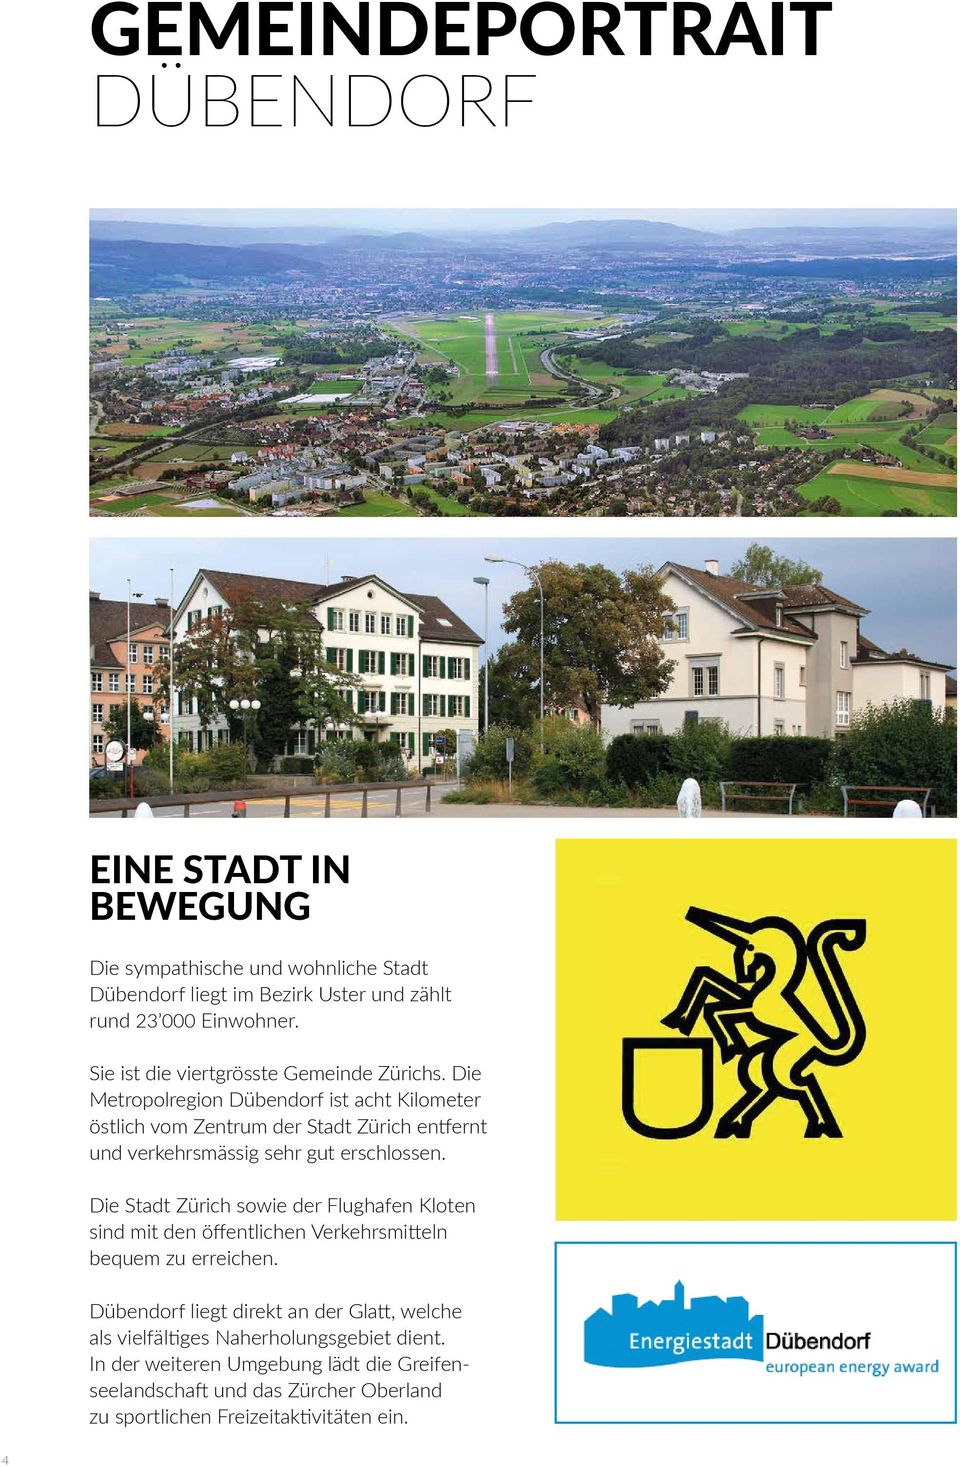 Die Metropolregion Dübendorf ist acht Kilometer östlich vom Zentrum der Stadt Zürich entfernt und verkehrsmässig sehr gut erschlossen.